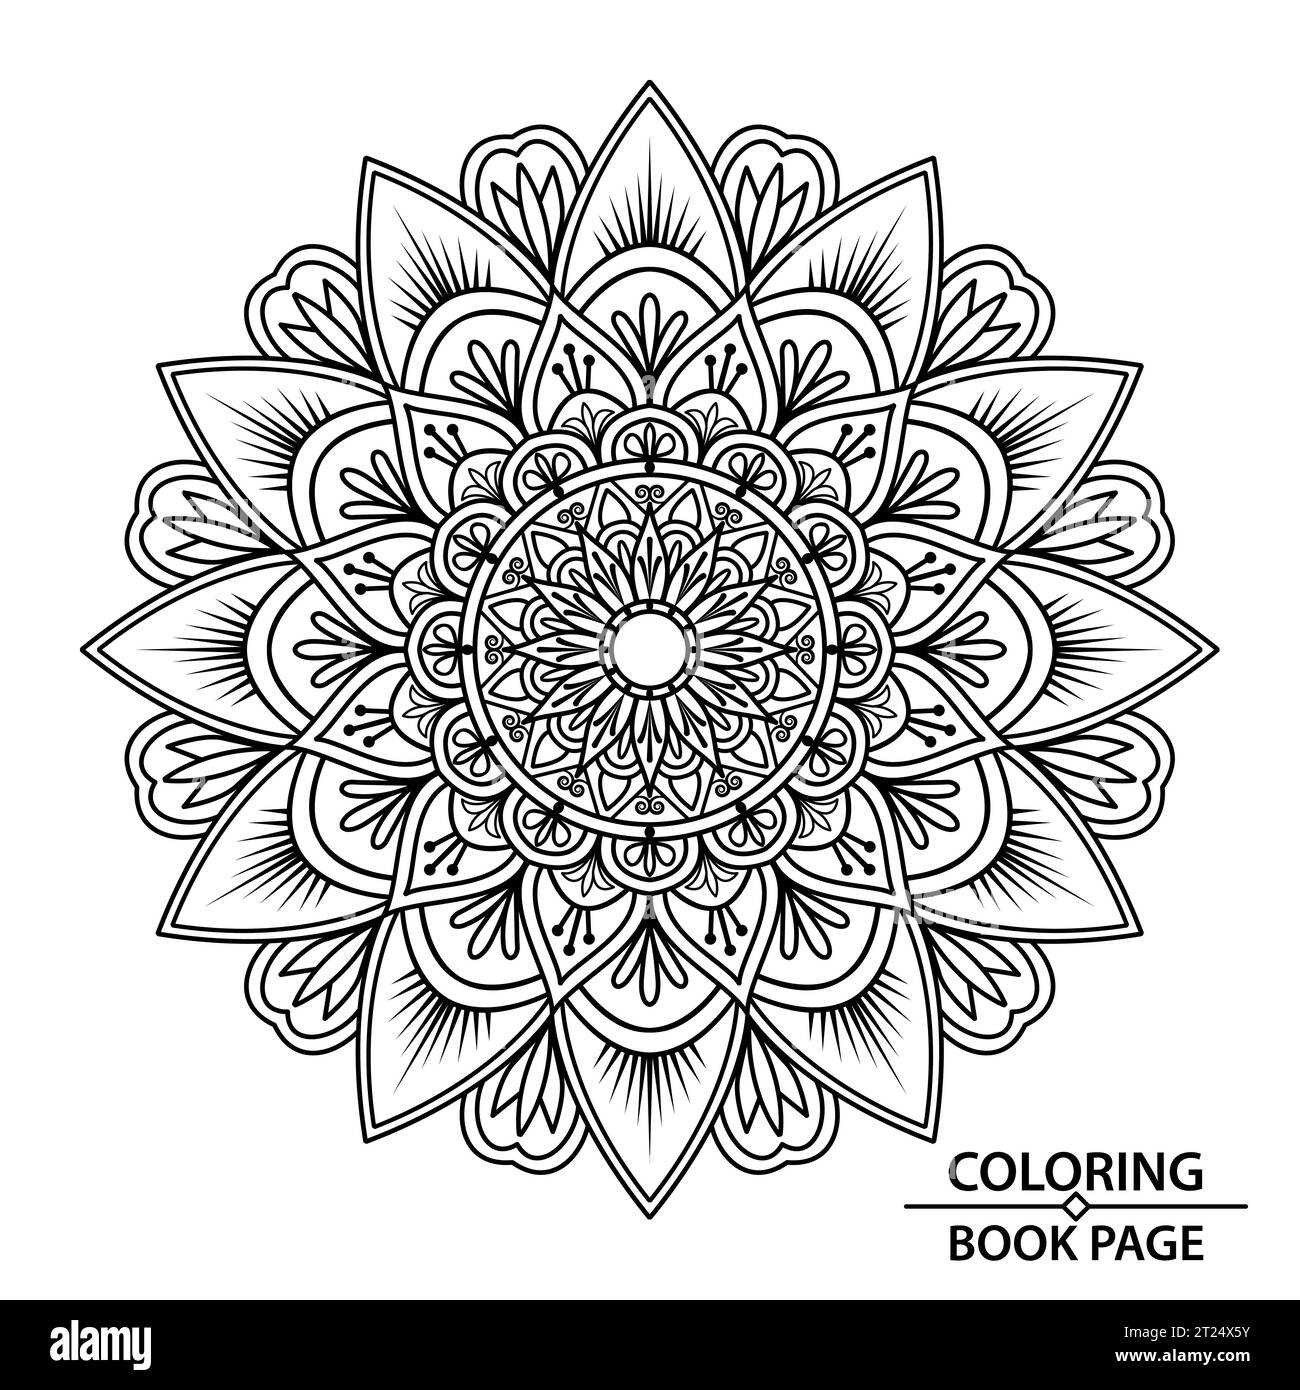 Pagina del libro Mandala di taglio della carta da colorare per adulti e bambini. Easy Mandala Coloring Book Pages per adulti, capacità di rilassarsi, esperienze cerebrali donano Illustrazione Vettoriale